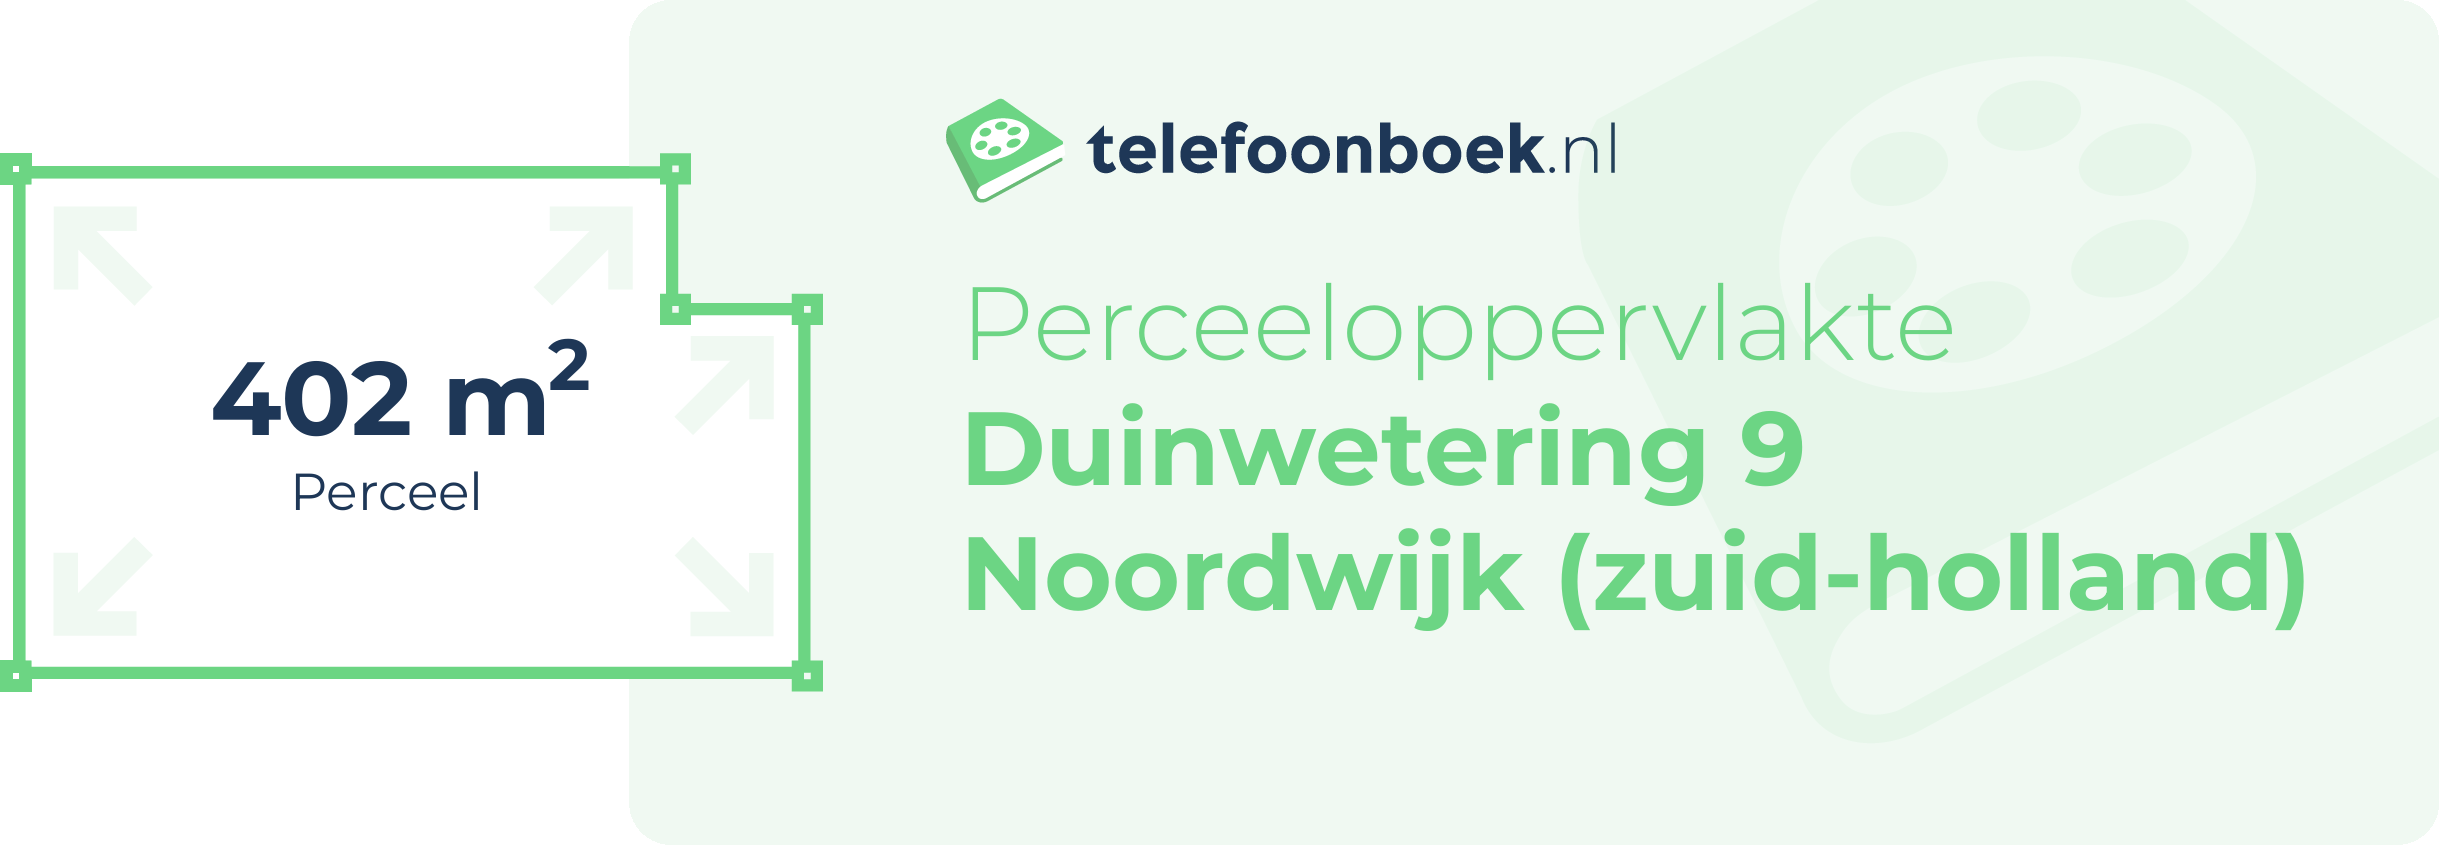 Perceeloppervlakte Duinwetering 9 Noordwijk (Zuid-Holland)